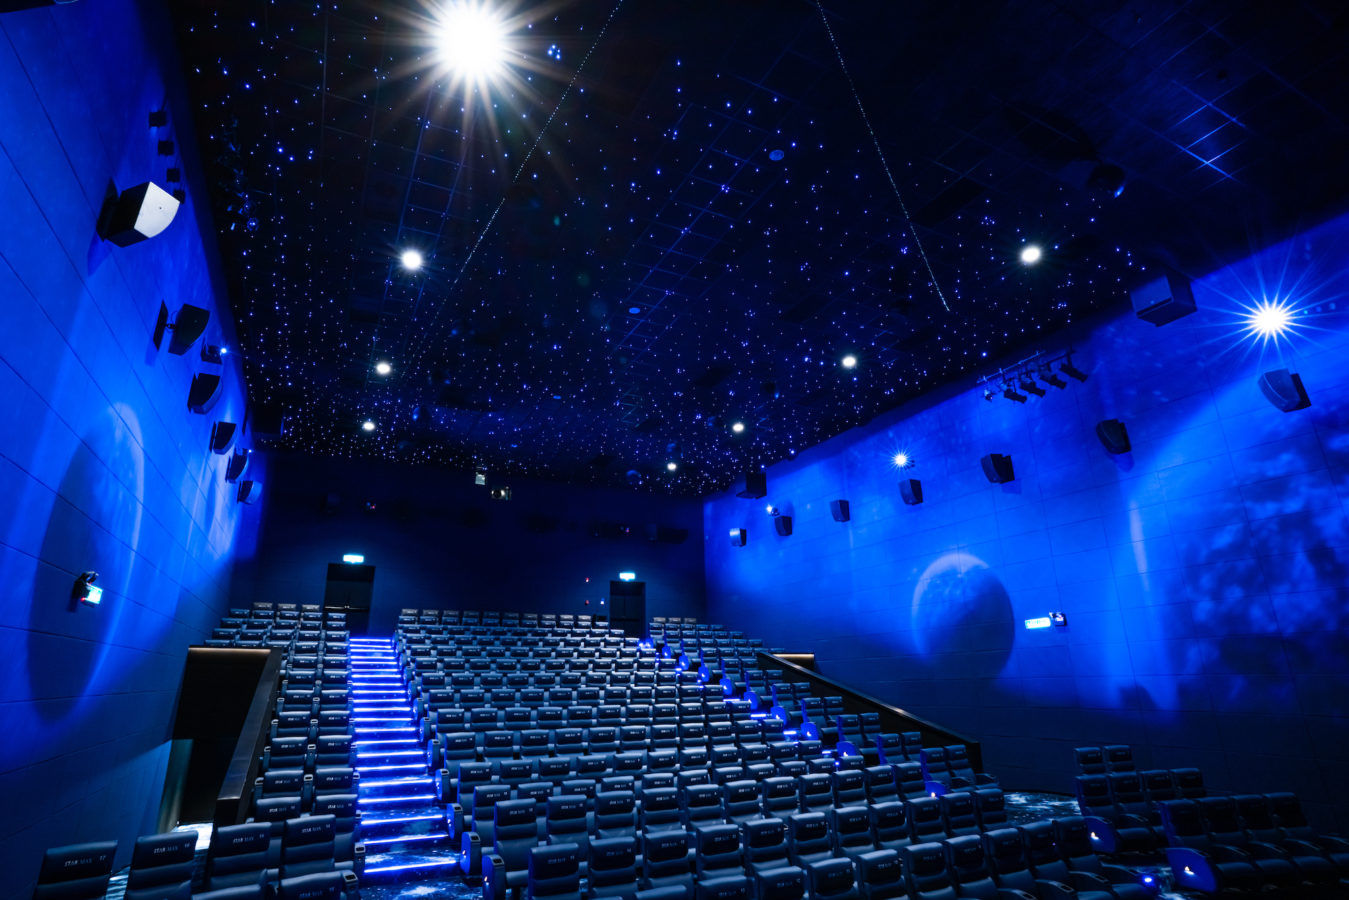 Should you be visiting Dadi Cinema at Pavilion Kuala Lumpur?